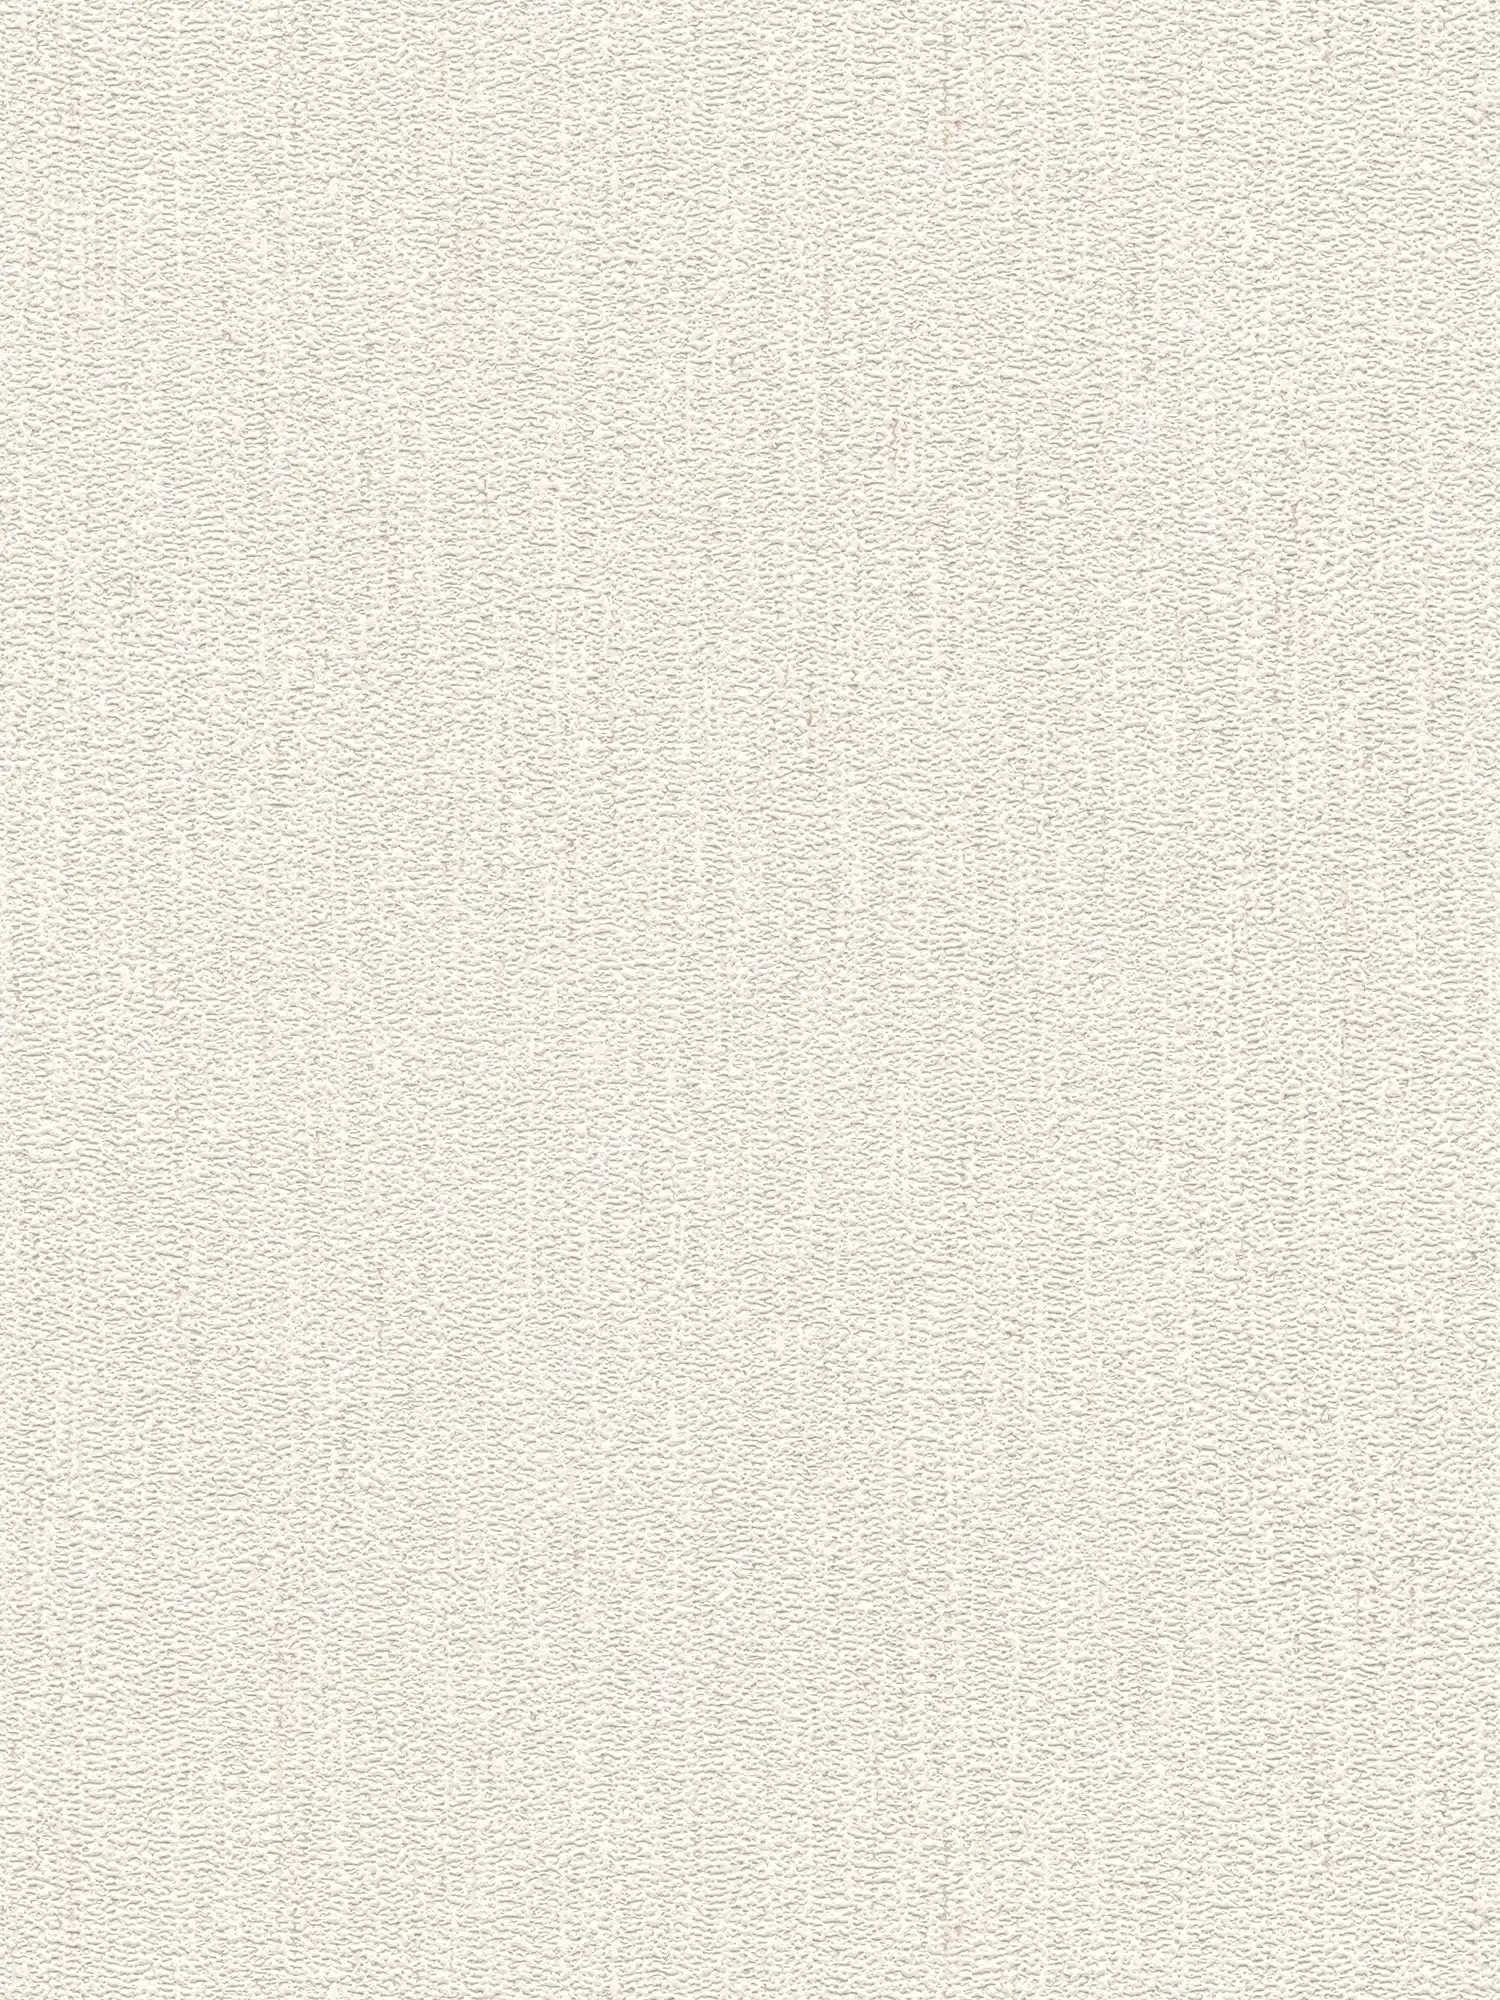 Papel pintado no tejido con estructura de tela en brillo claro - blanco, crema
